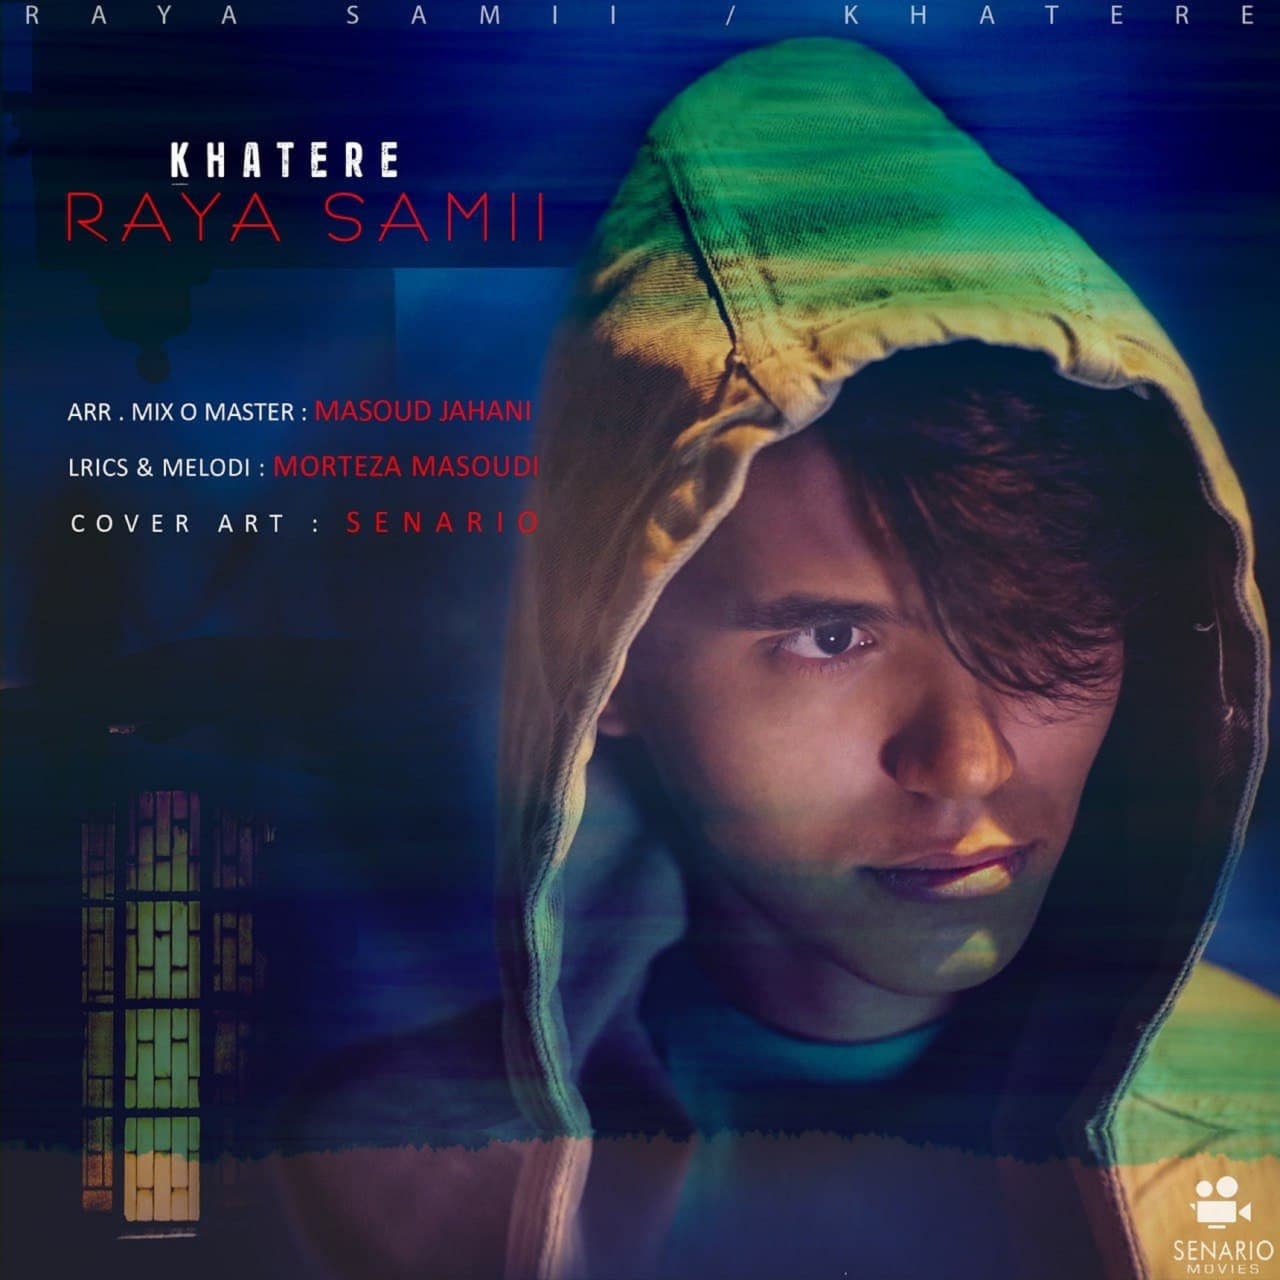  دانلود آهنگ جدید رایا سامی - خاطره | Download New Music By Raya Samii - Khatere